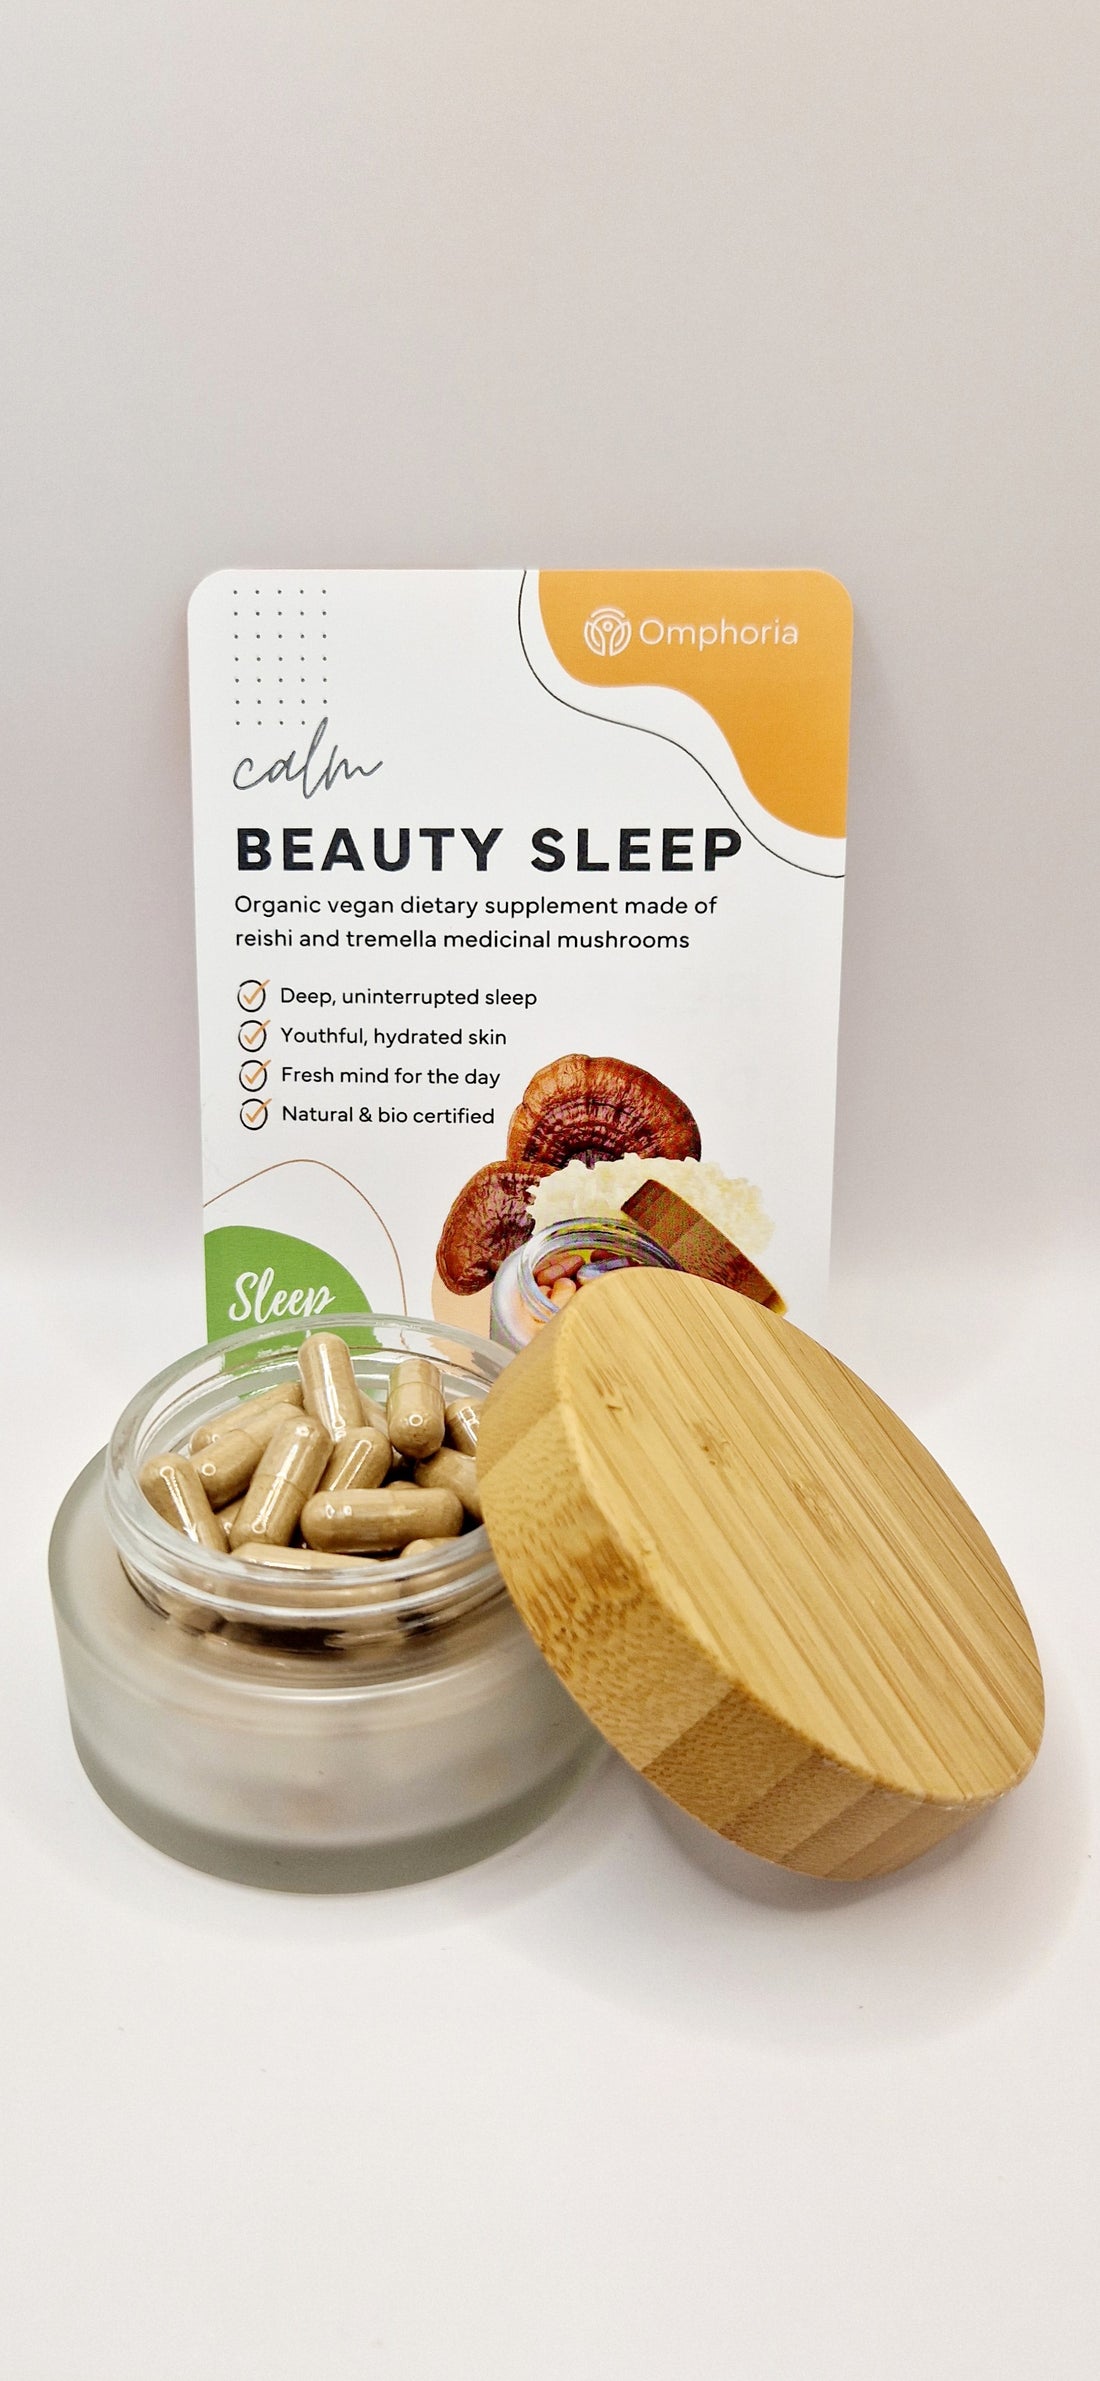 Beauty Sleep reishi tremella medicinal mushroom supplements, flyer